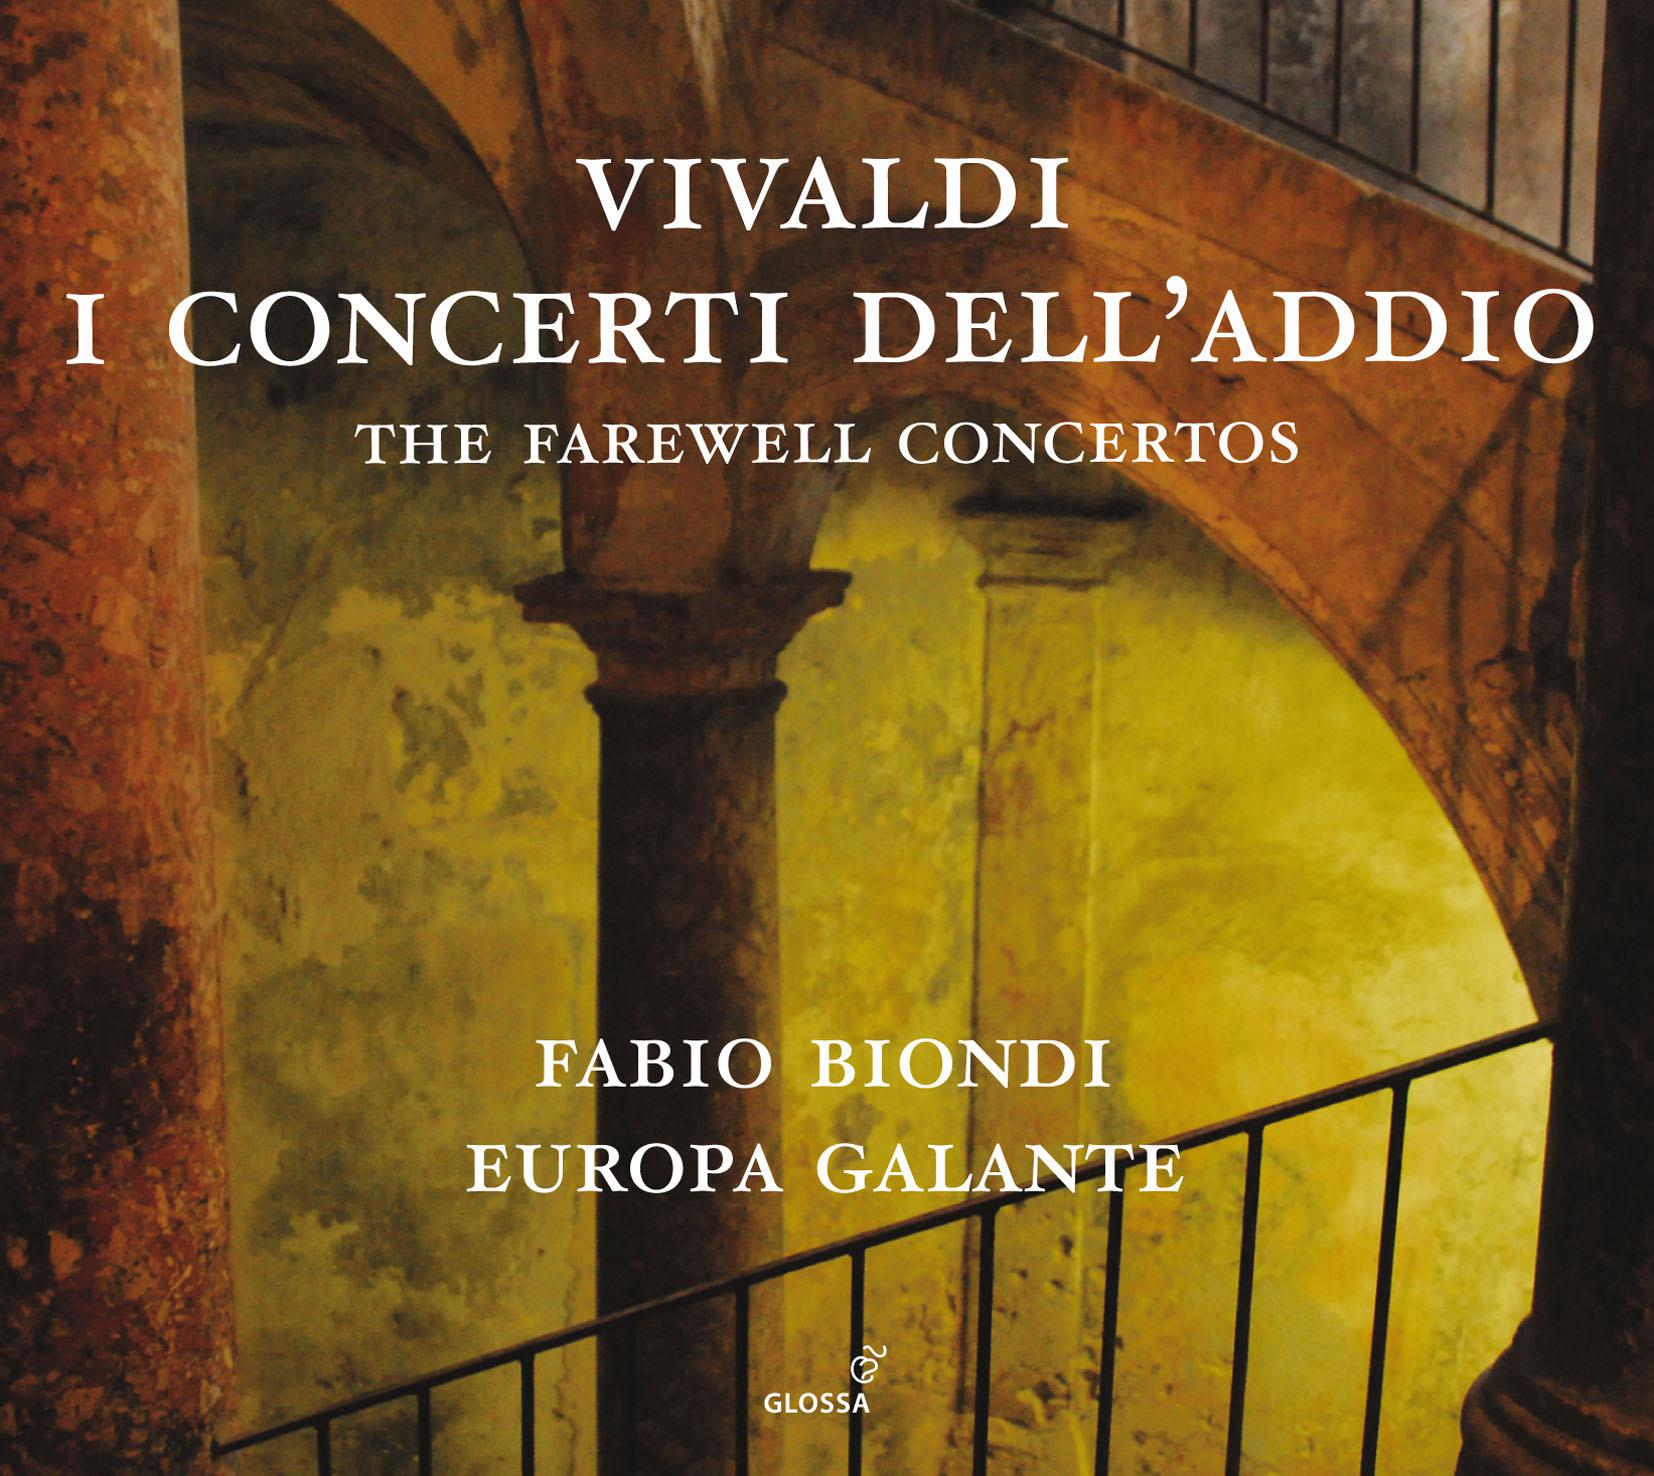 Violin Concerto in C Major, RV 189: I. Larghetto